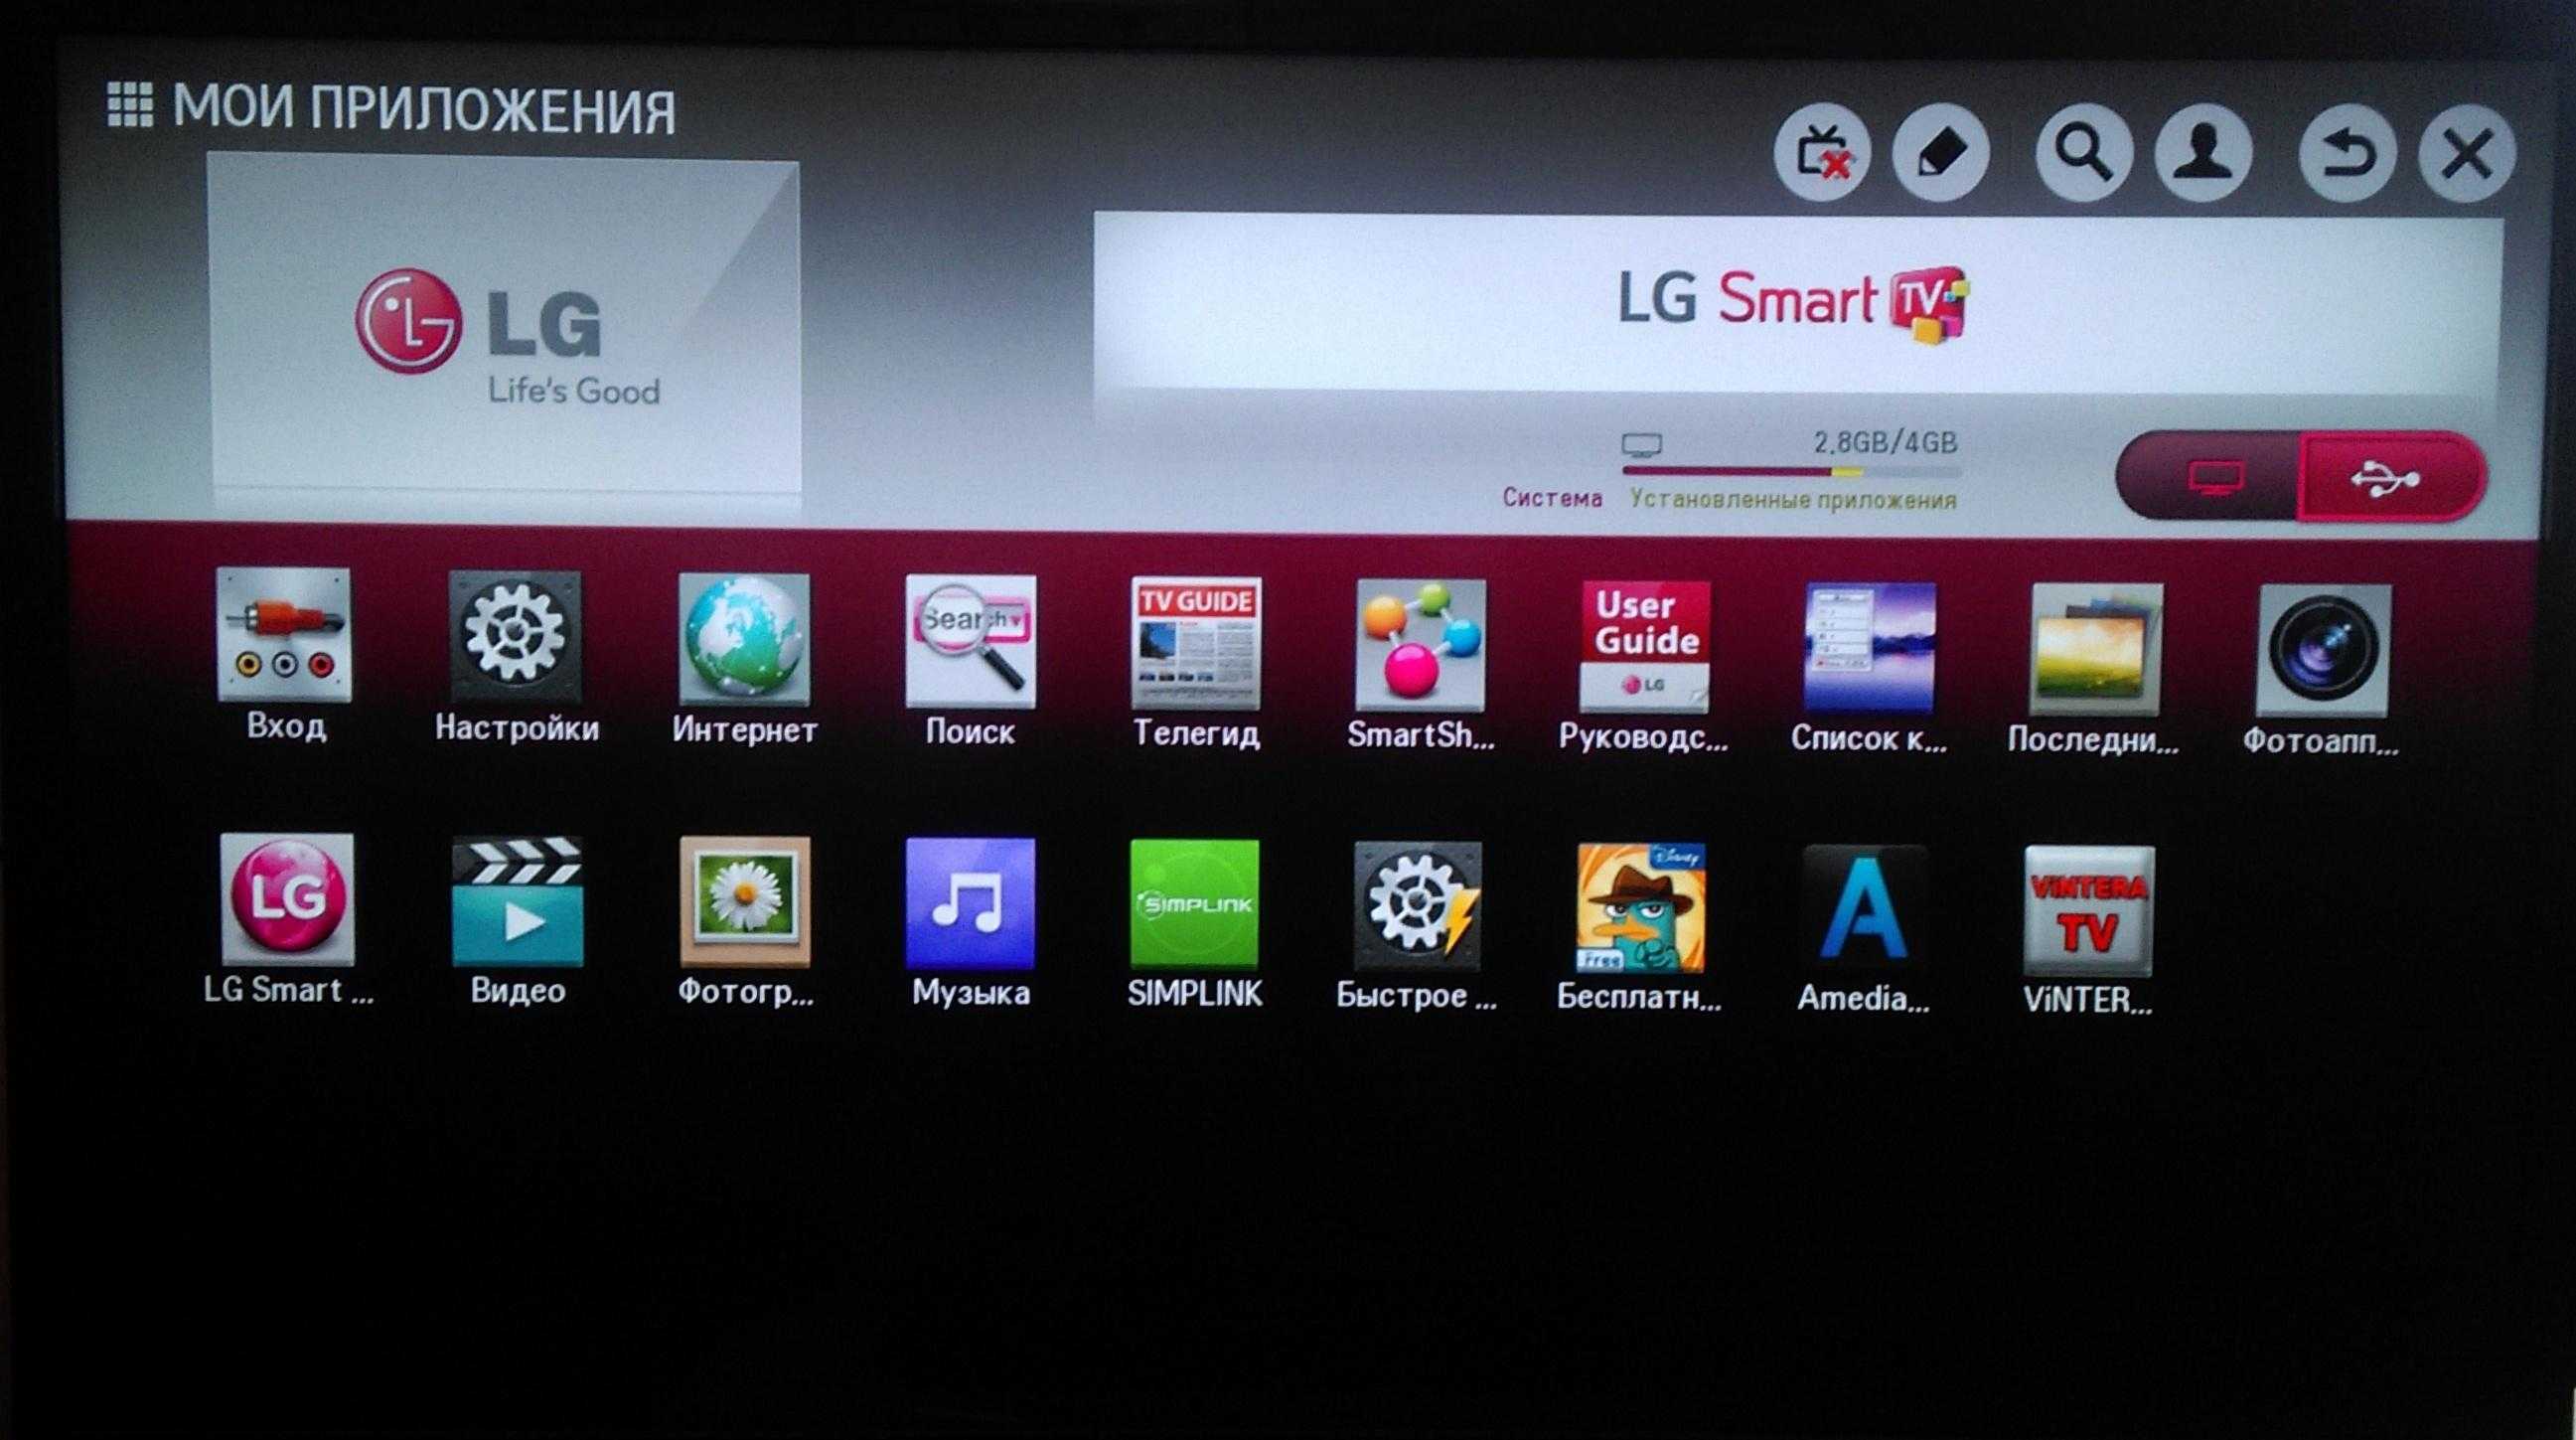 Подробная инструкция по созданию учетной записи на телевизоре LG и установке программ и игр на телевизор LG с функцией Smart TV